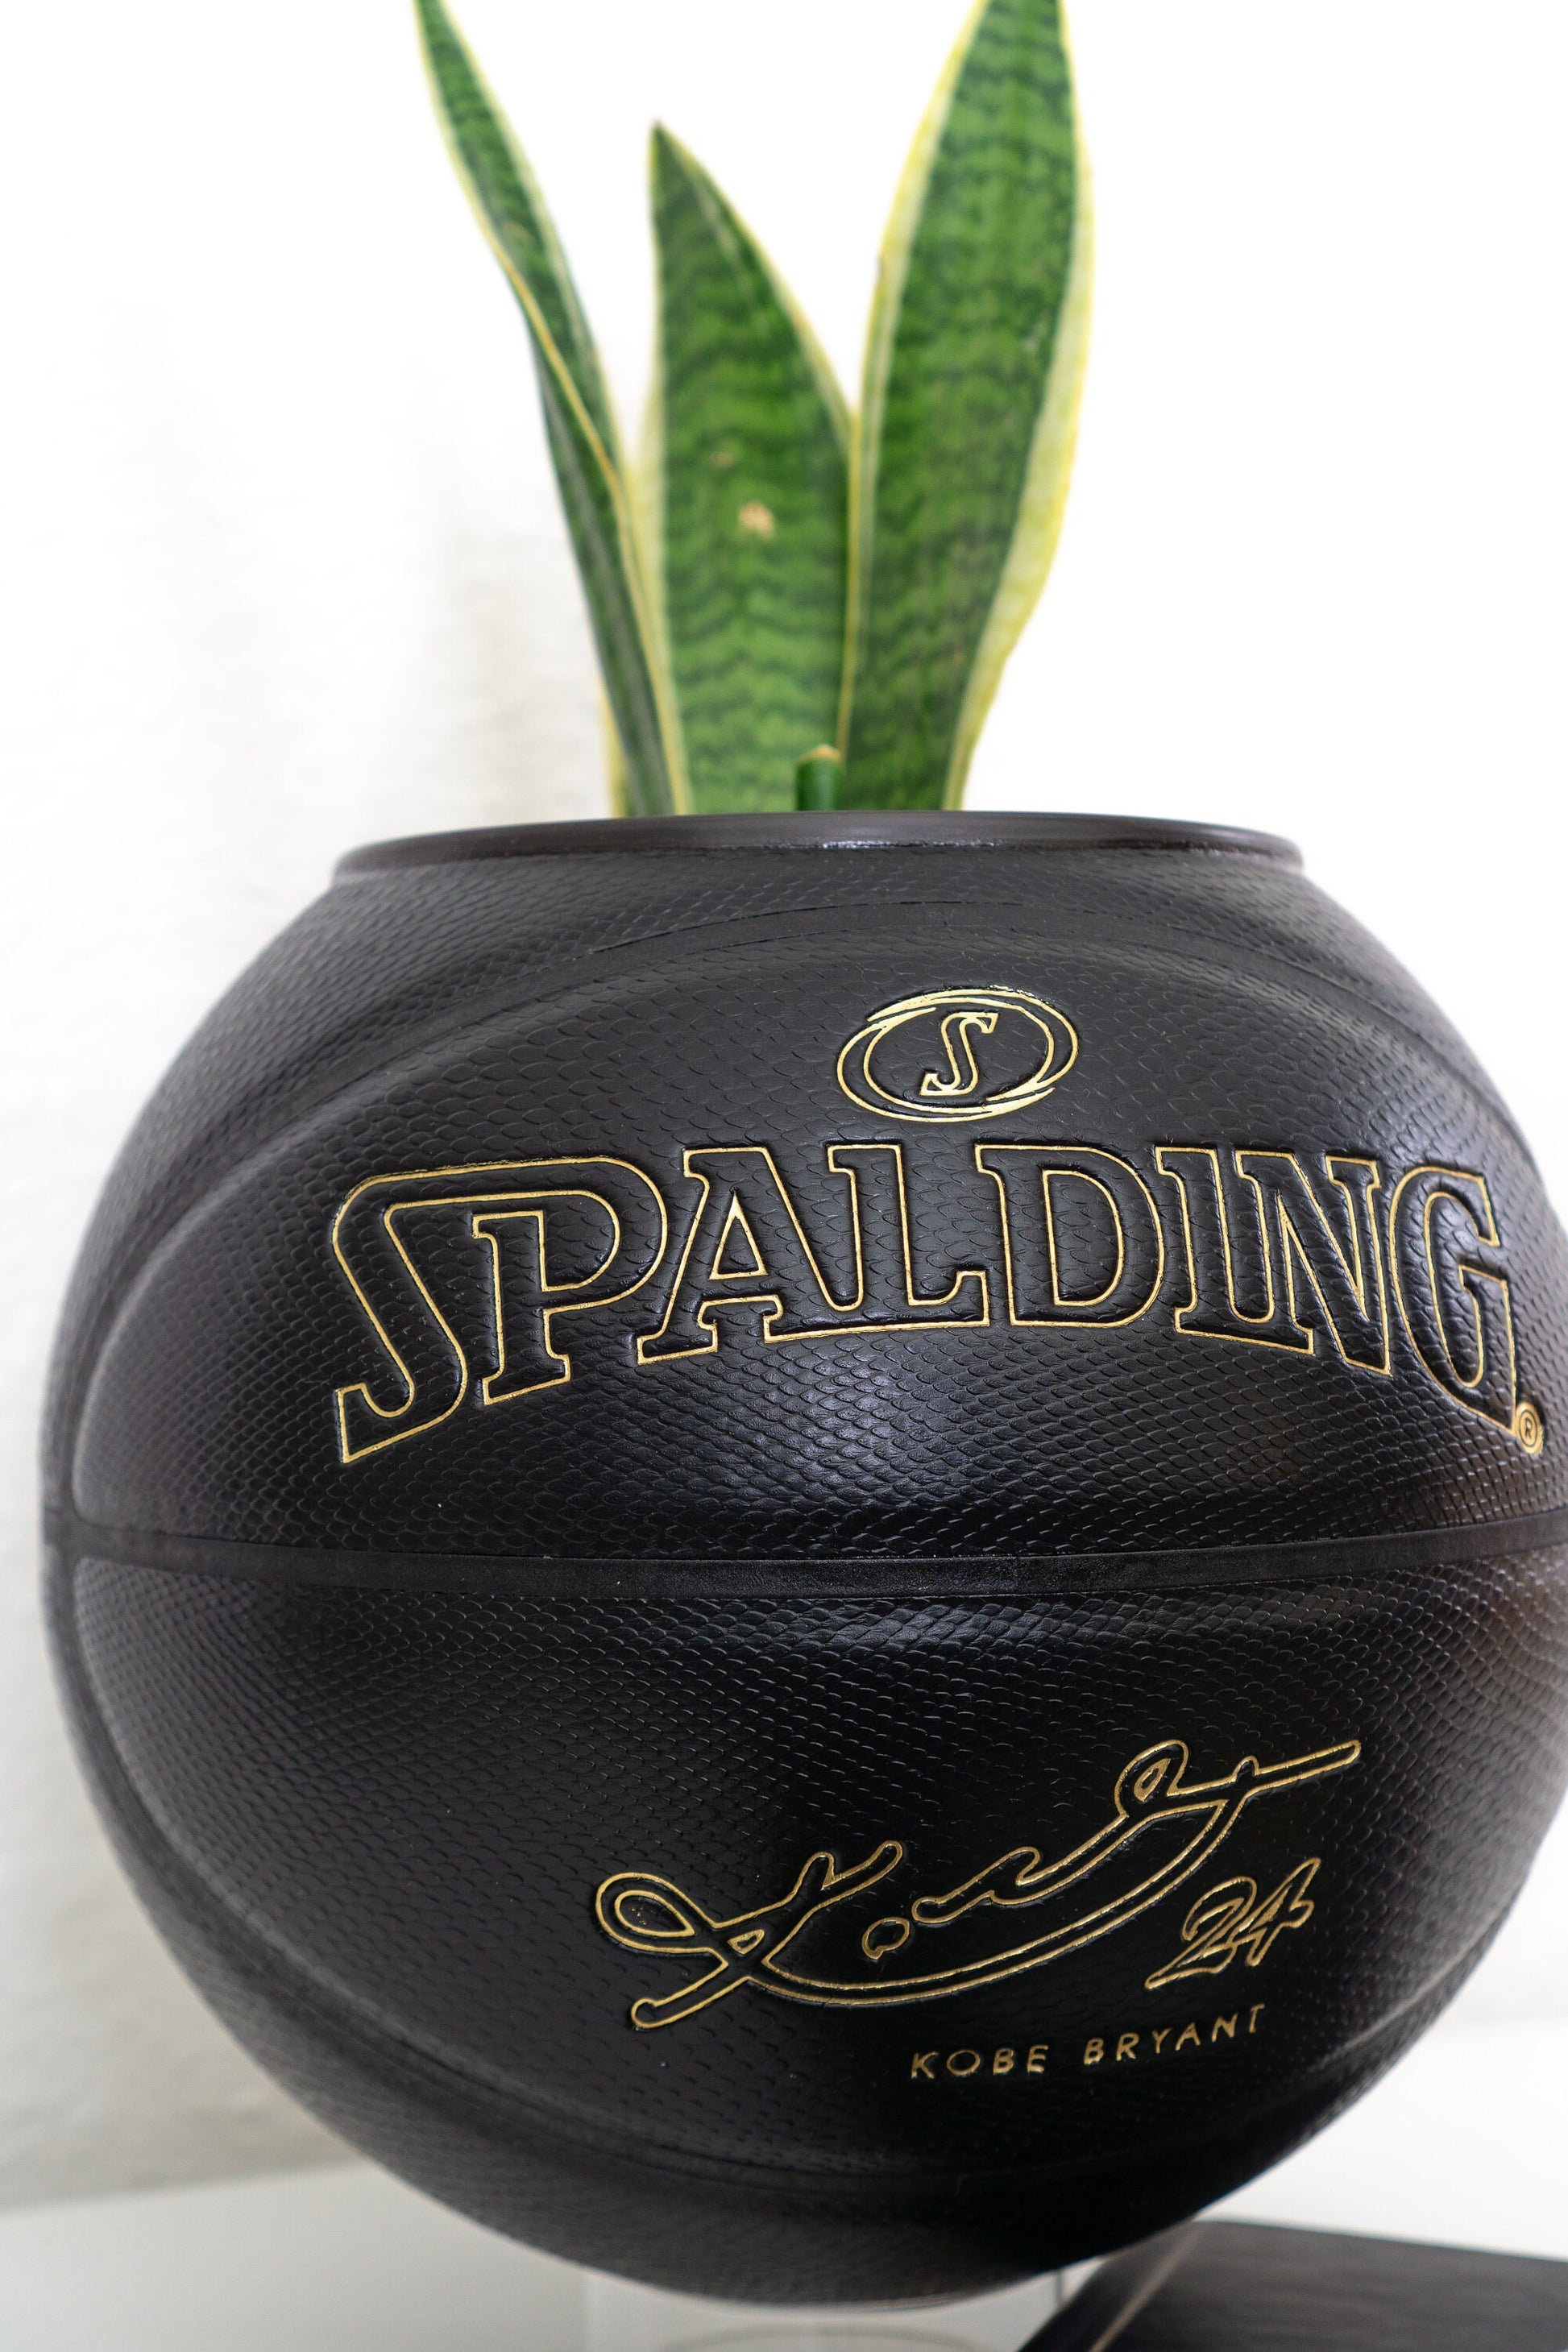 Spalding x Kobe Bryant Black Mamba Basketball